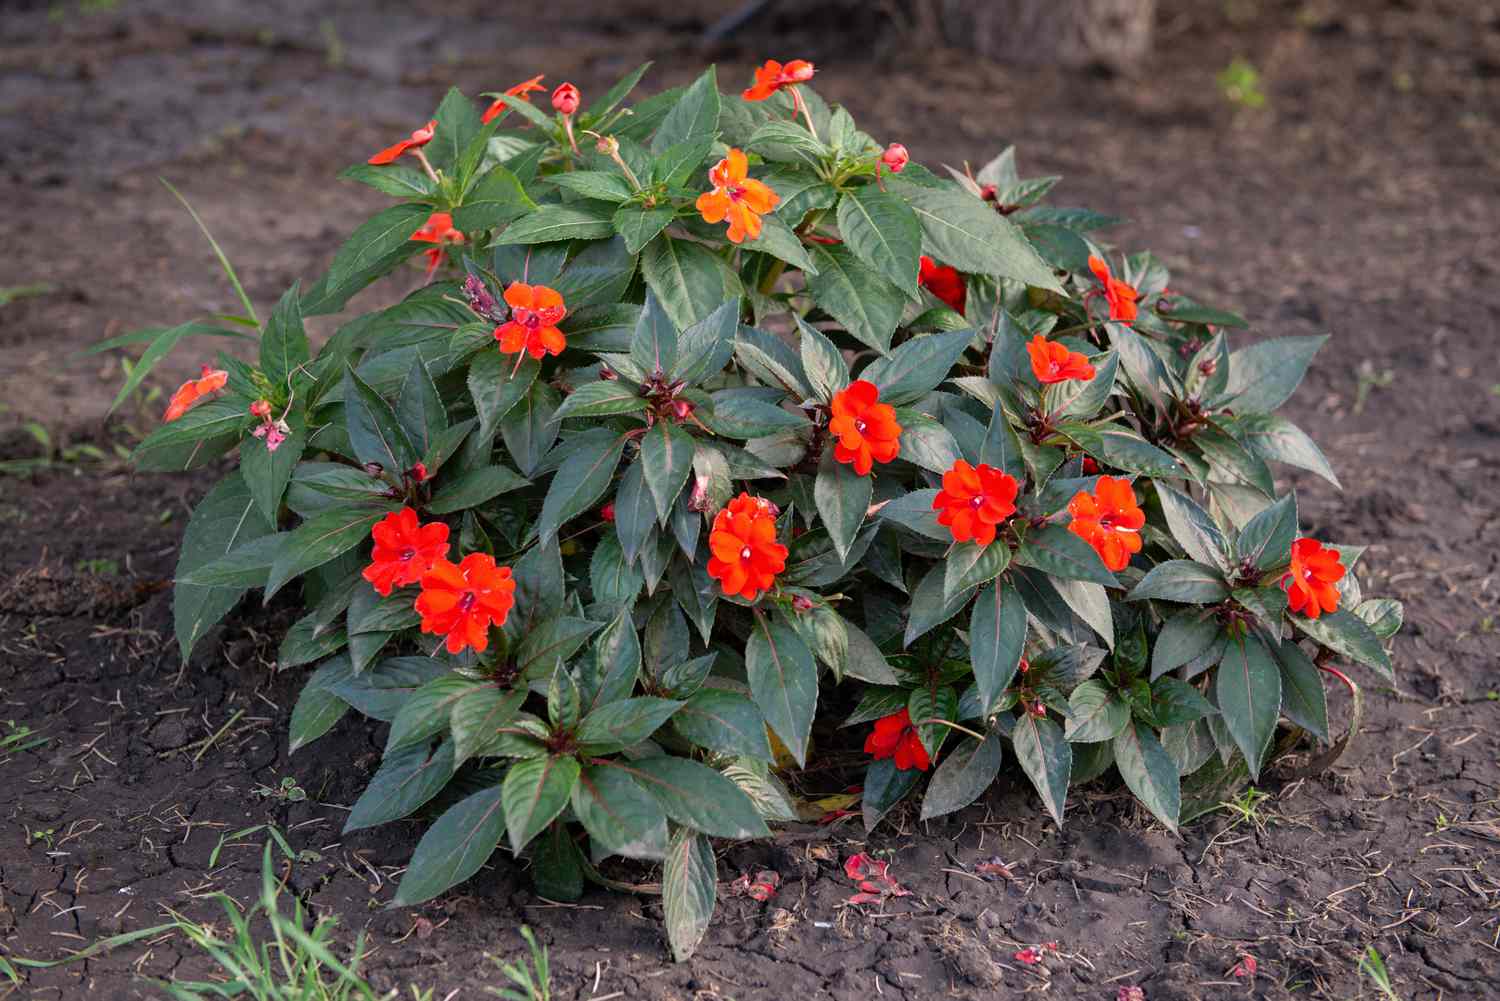 SunPatiens-Strauch mit leuchtend roten Blüten und dunkelgrünen Blättern inmitten des Bodens